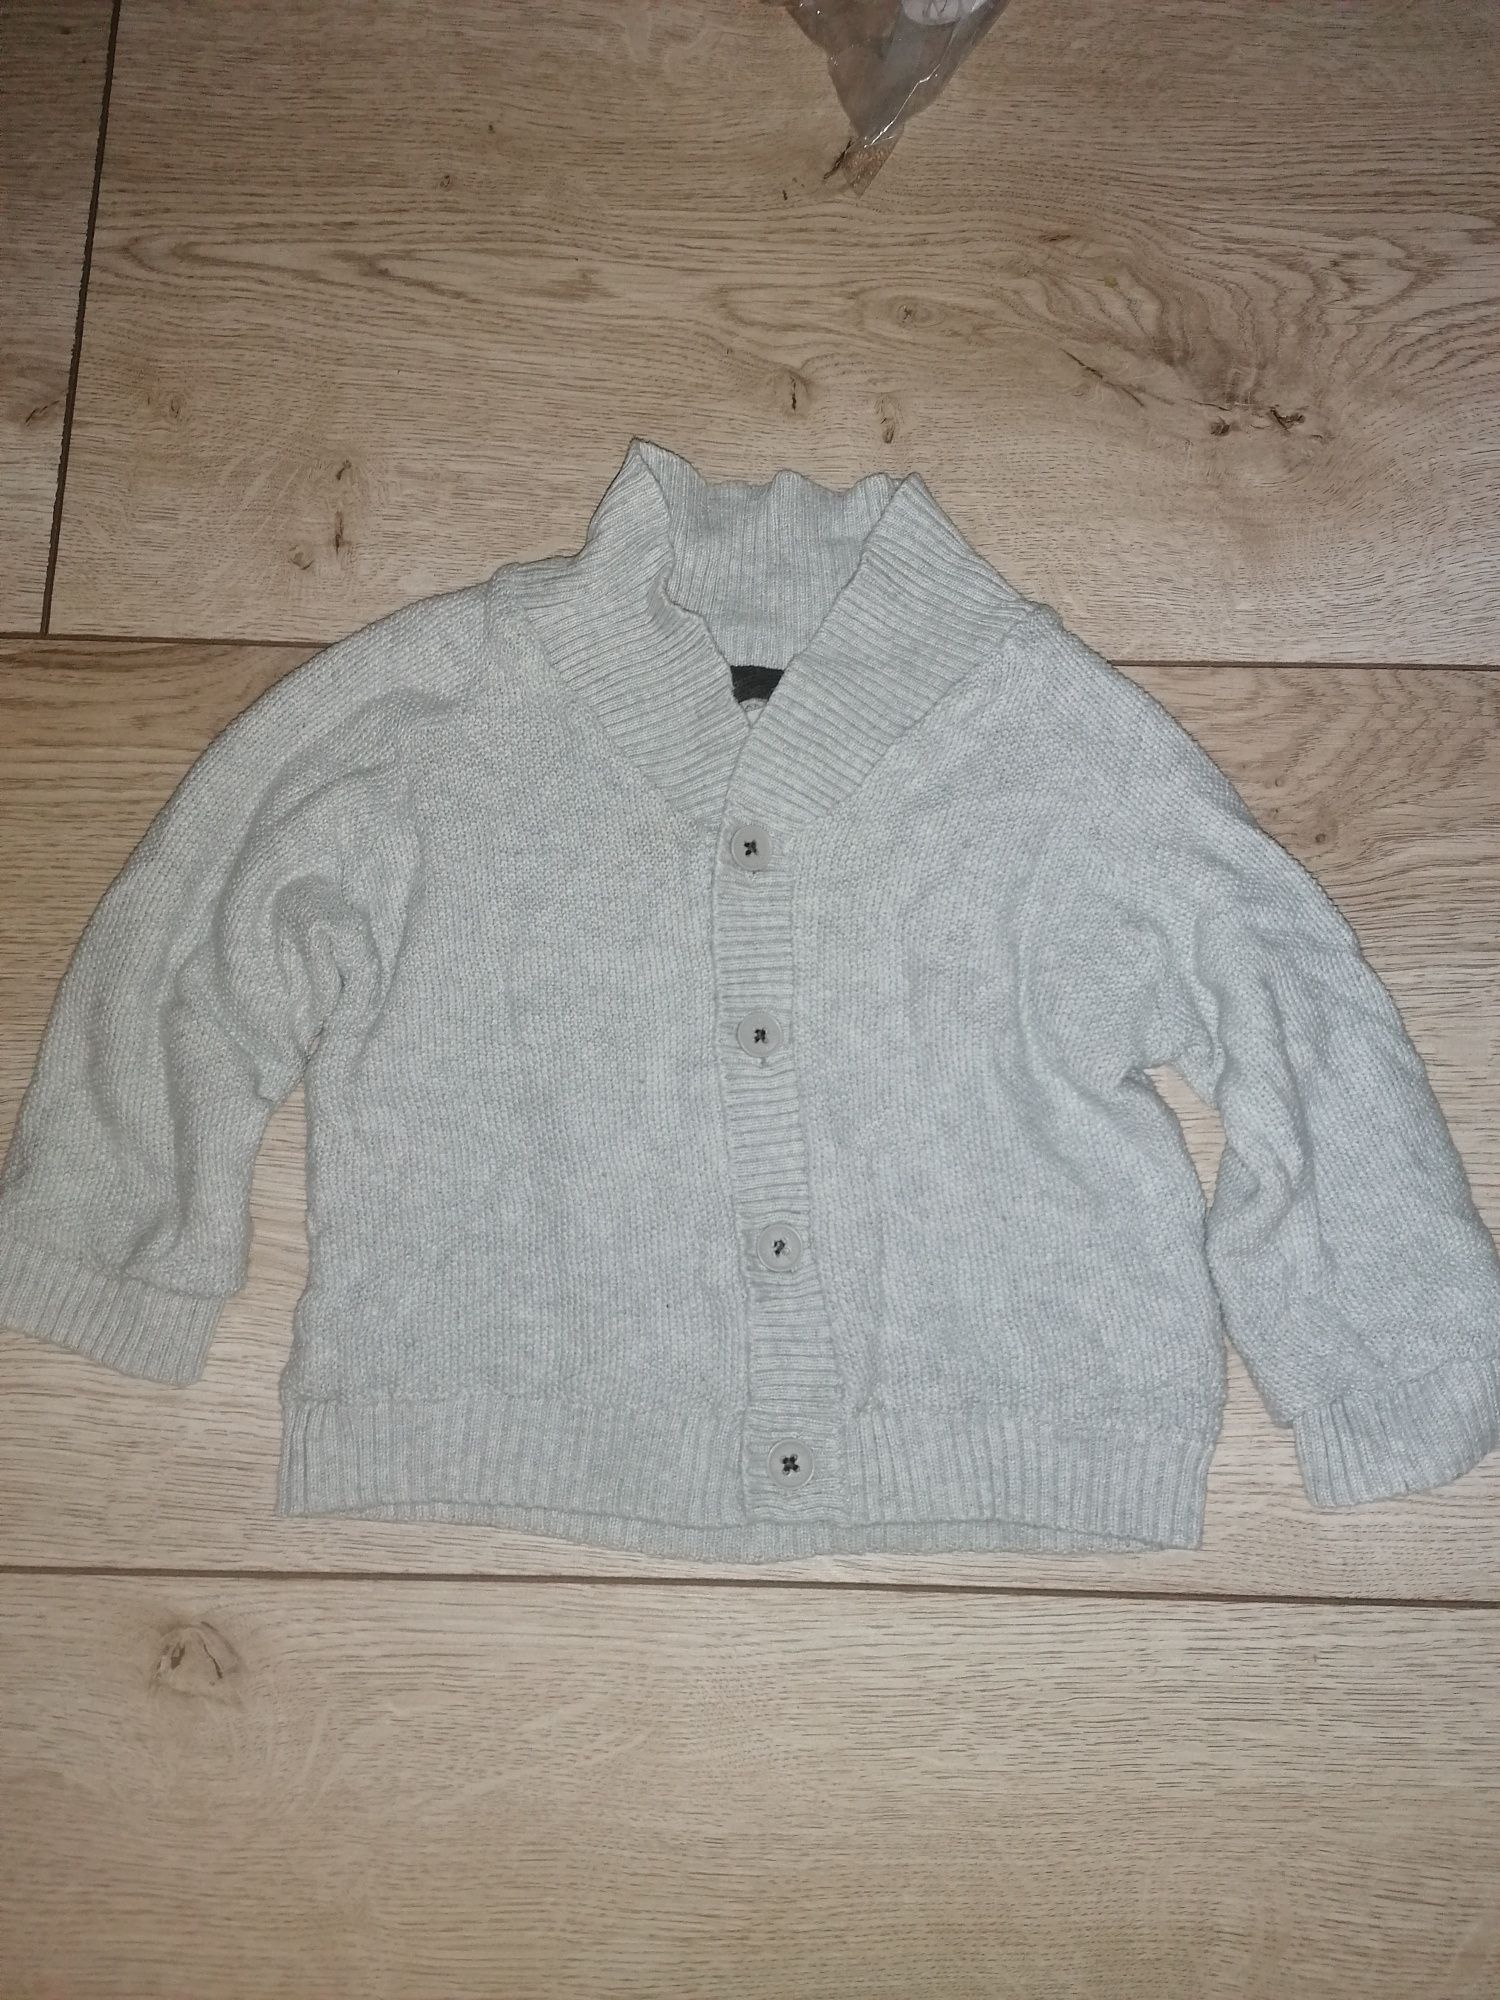 Szary rozpinany sweter Smyk 74